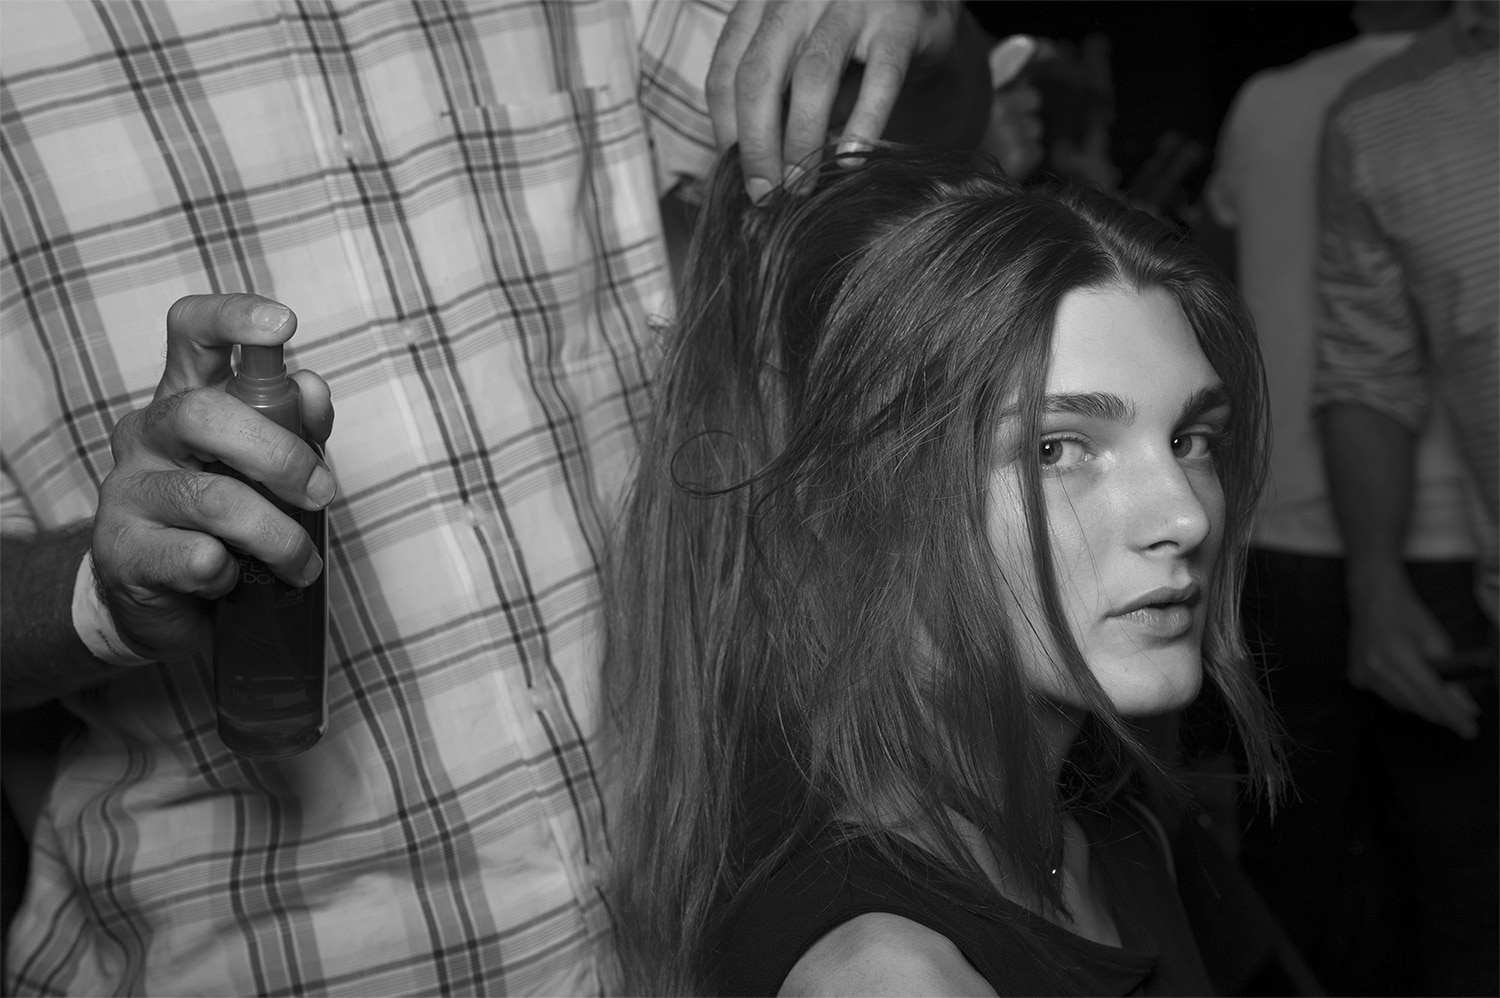 Una modelo con su largo pelo castaño, húmedo, a quien un estilista le aplica spray con un producto fuera de la foto